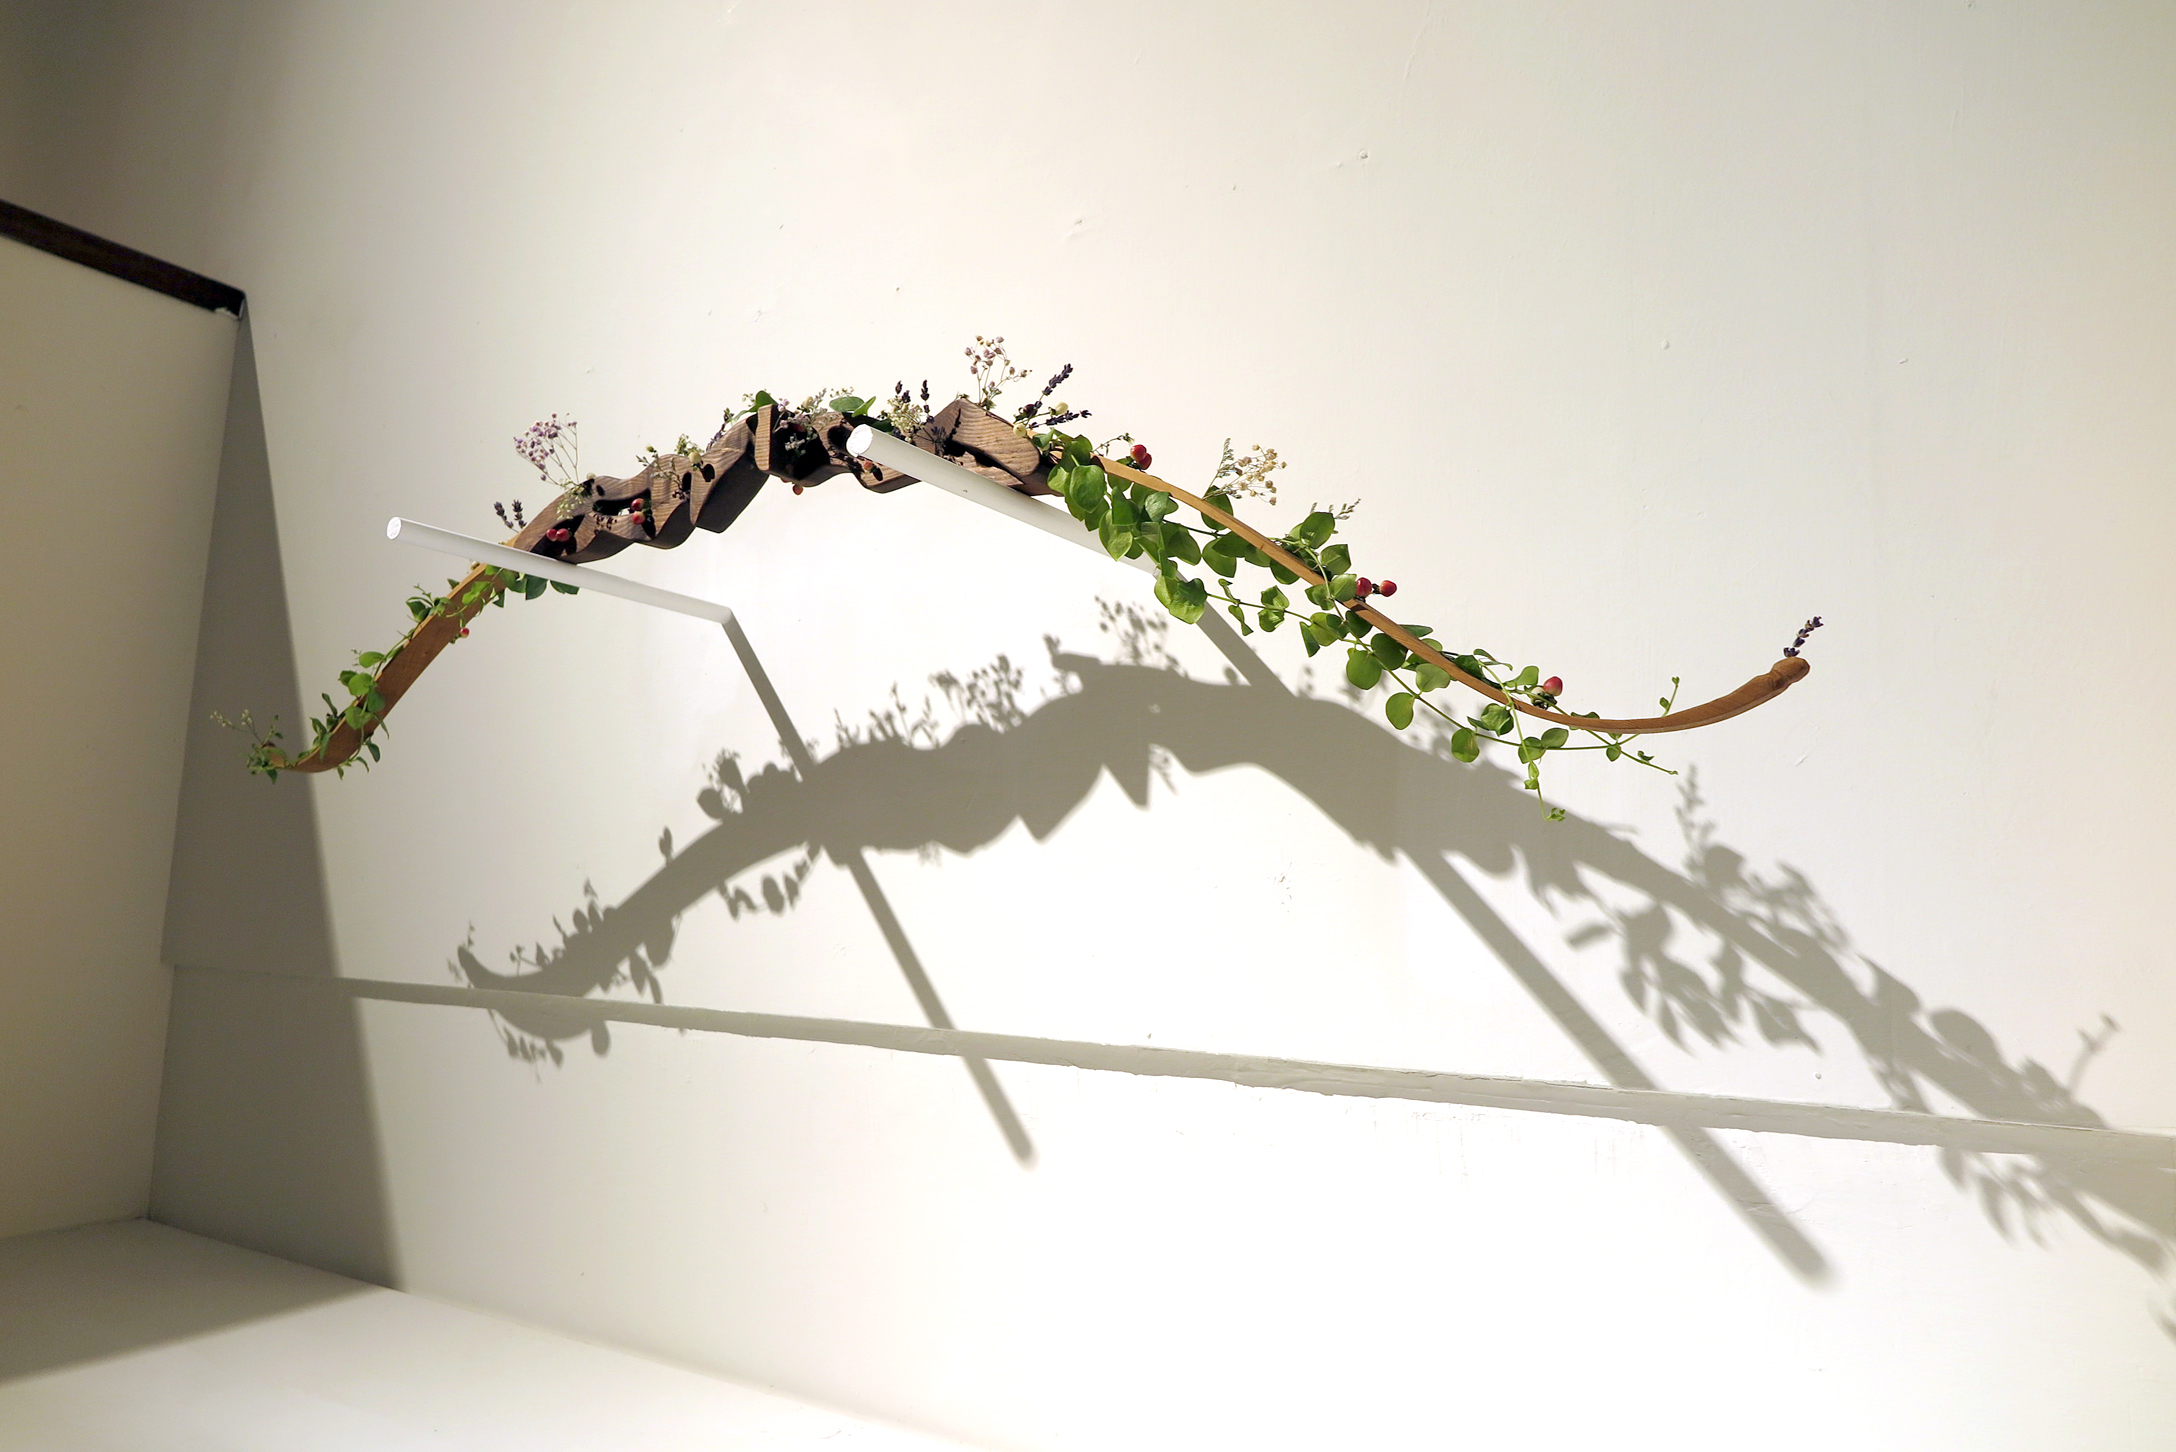 张纳祈同学的作品「放下」对战争的正当性提出质问，并透过亲手雕刻的弓箭与装置上的植物来表达「爱」才是能让纷争得以消弭的最终答案。